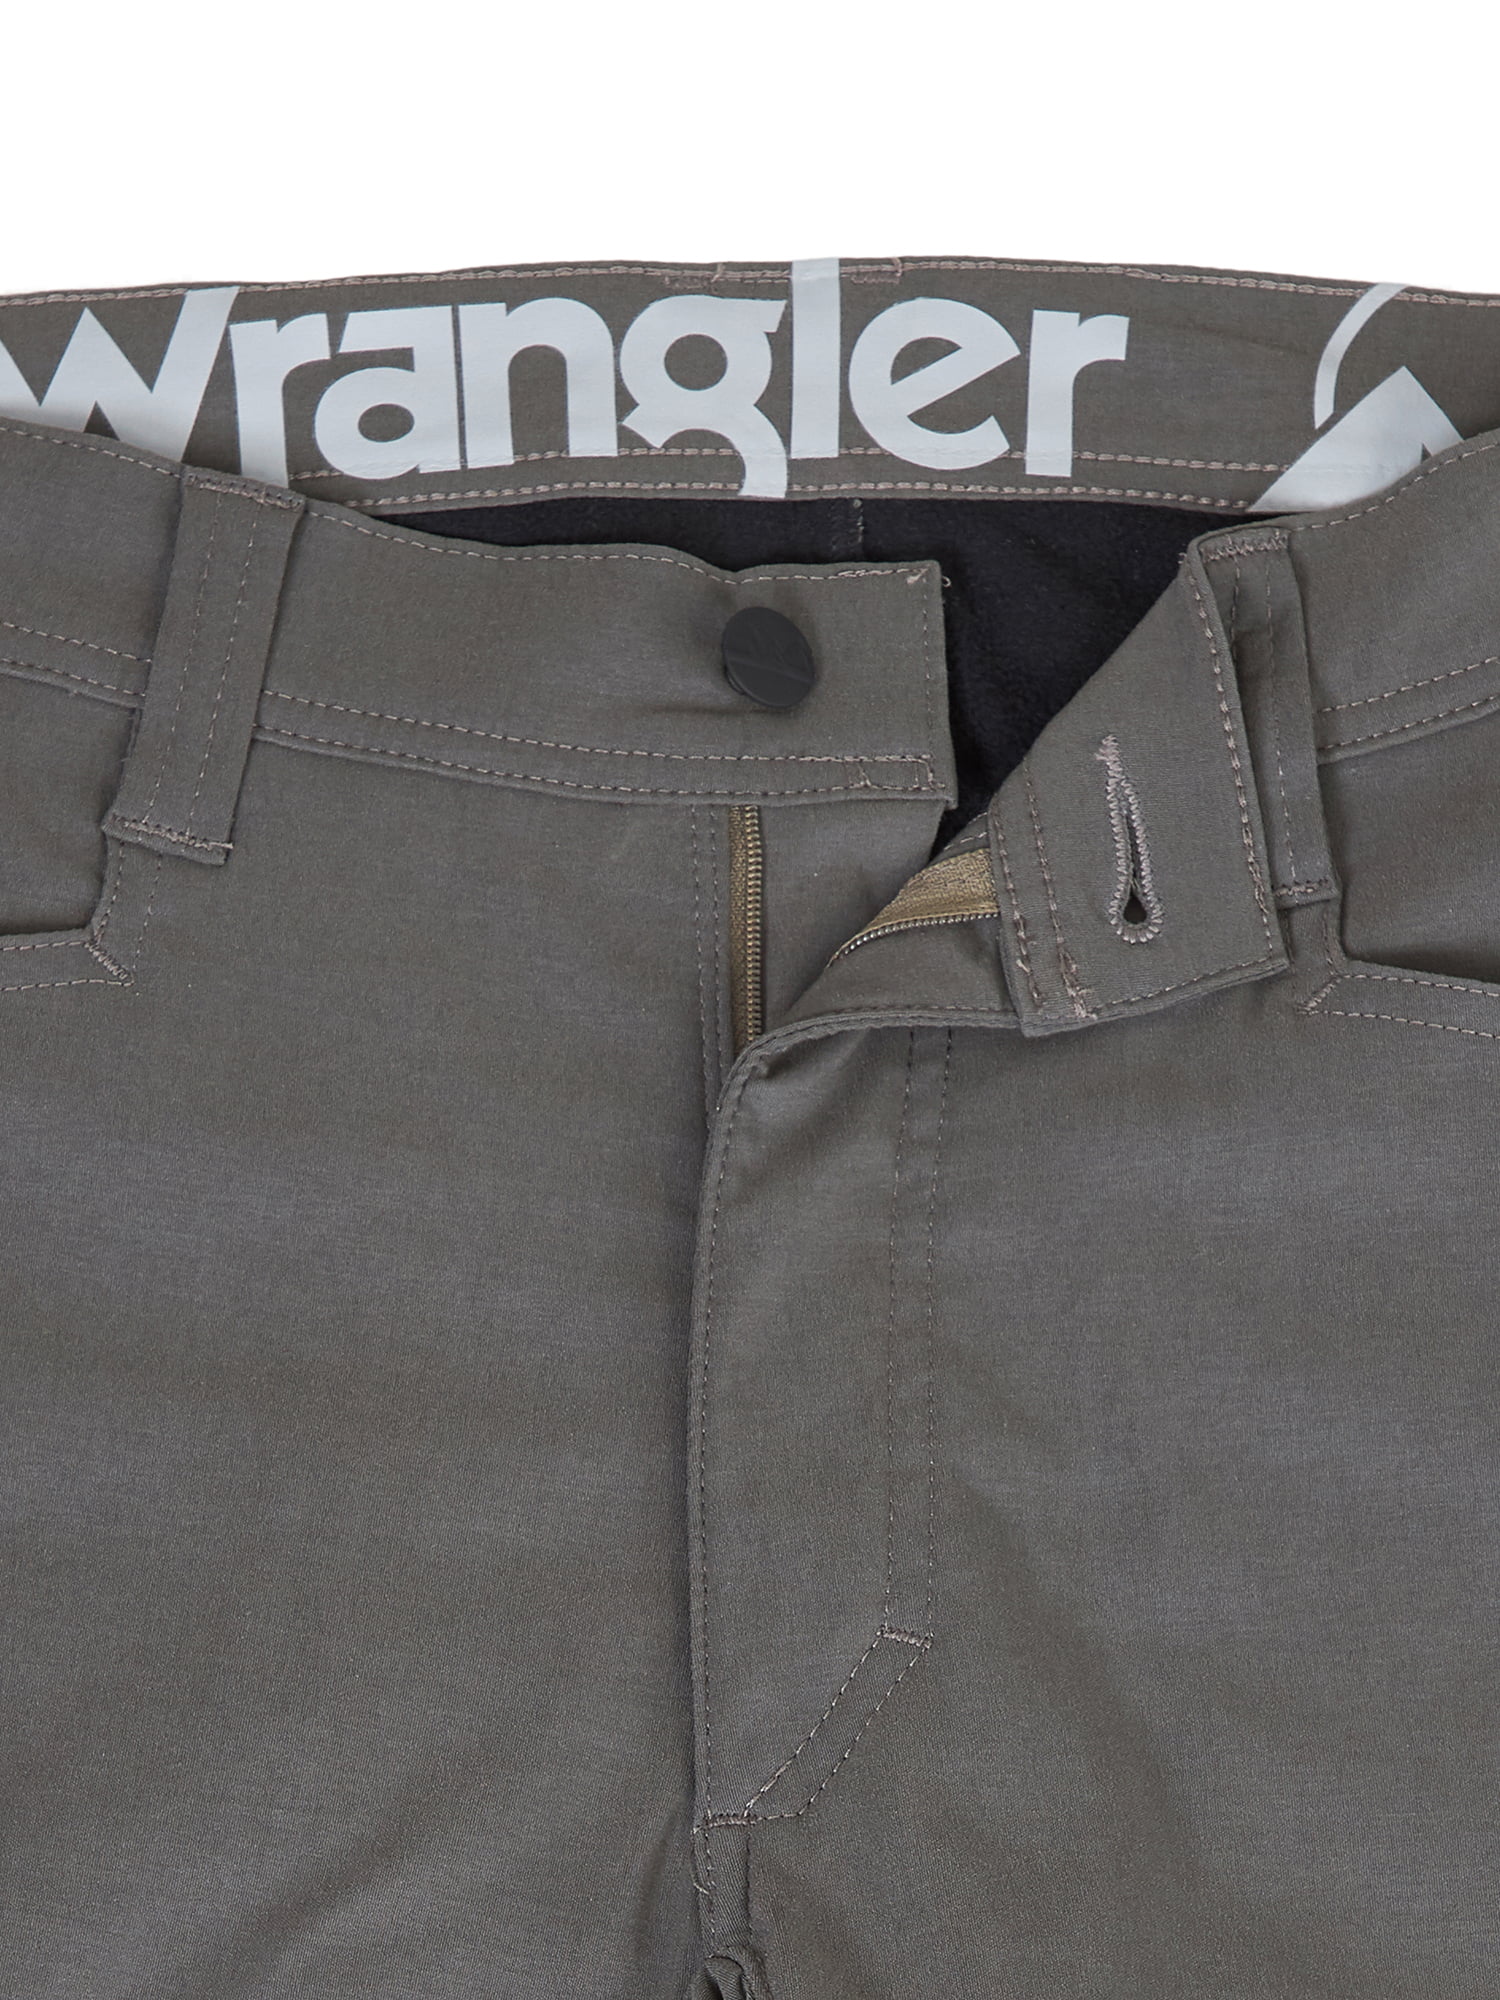 wrangler outdoor series fleece lined pants